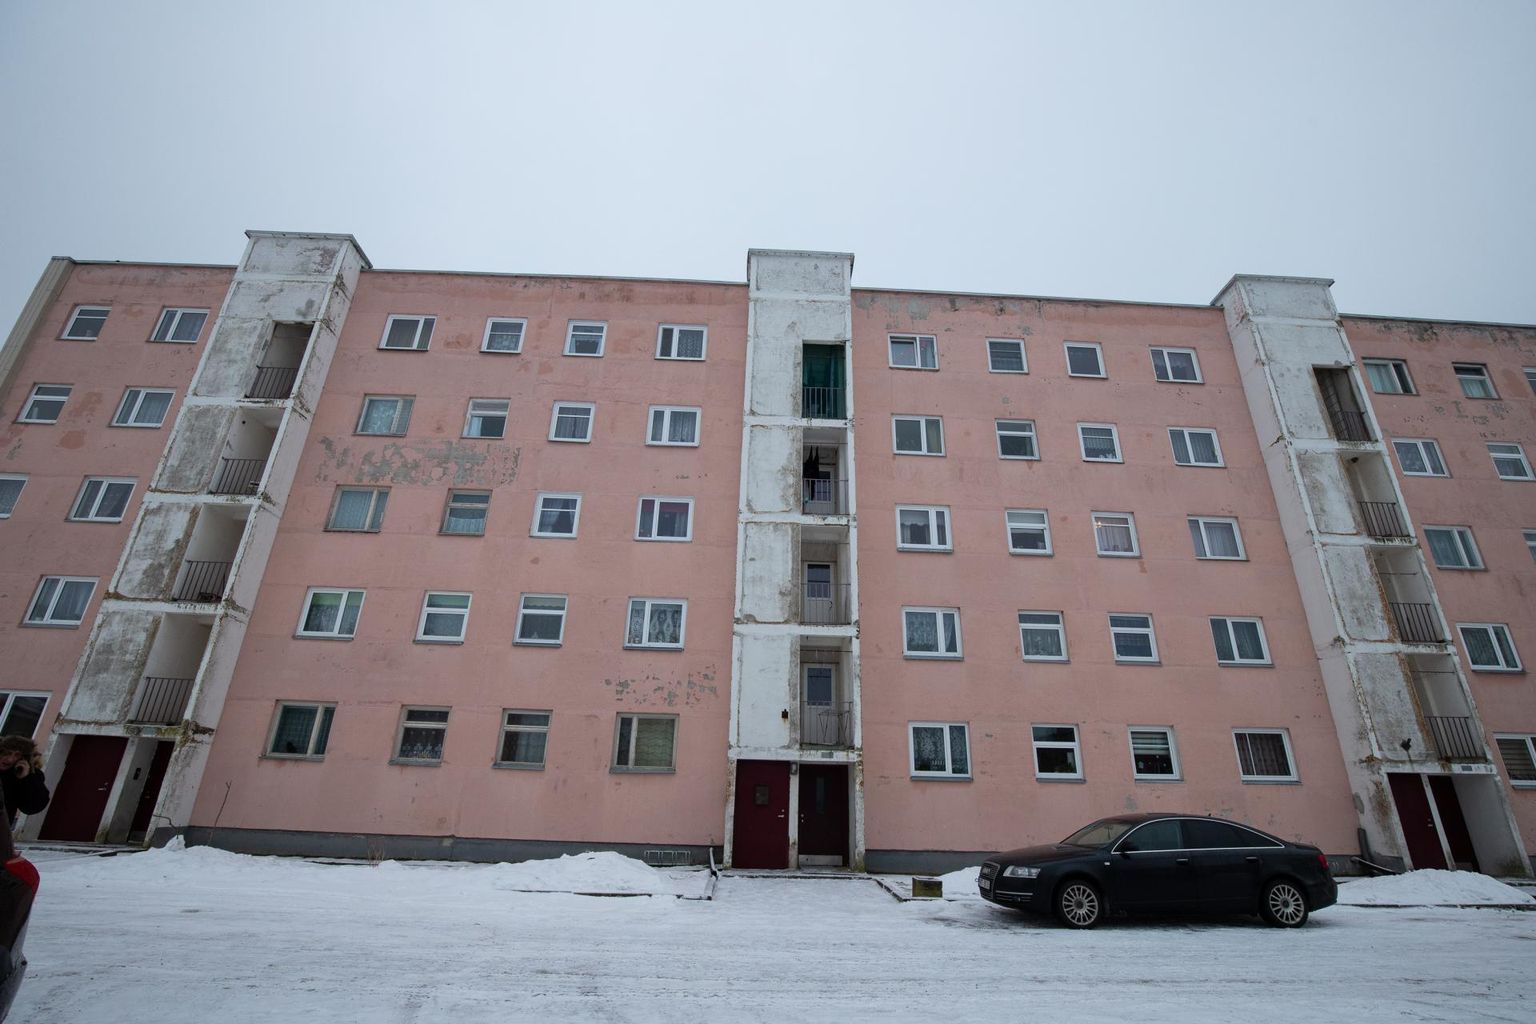 Selles majas Aseris kuulub 13 korterit Venemaa föderatsiooni kodanikele. Kui juba ühes majas on võõromanikke märkimisväärne hulk, siis kui palju võib neid olla kogu Eestis?